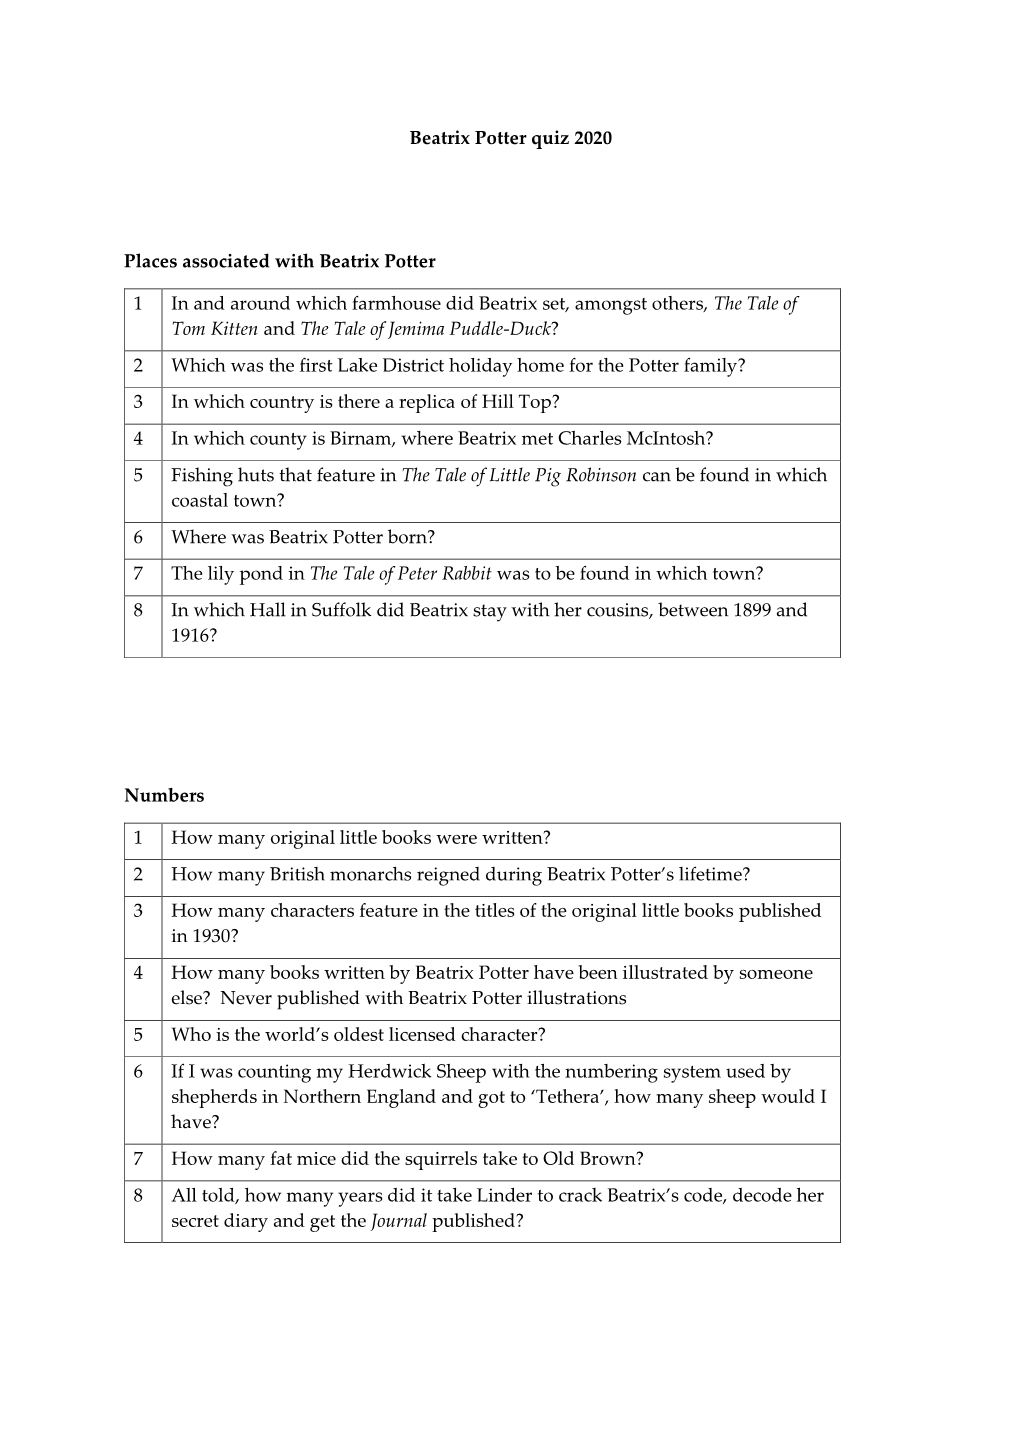 Beatrix-Potter-Quiz-Questions.Pdf